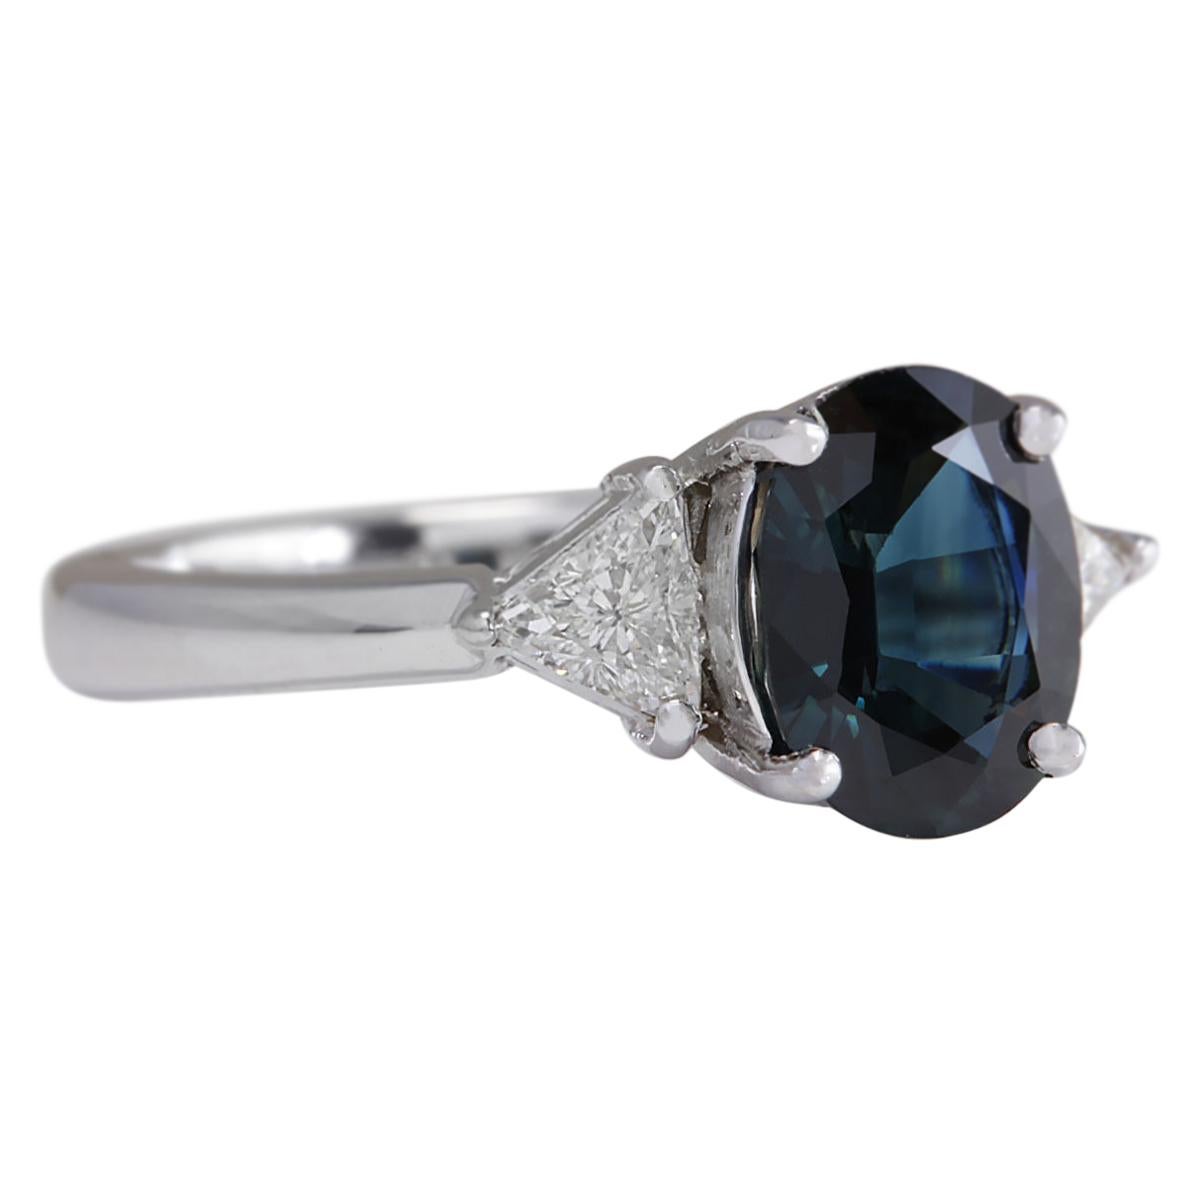 2.95 Carat Natural Sapphire 14 Karat White Gold Diamond Ring
Stamped: 14K White Gold
Total Ring Weight: 5.8 Grams
Total Natural Sapphire Weight is 2.50 Carat (Measures: 9.00x7.00 mm)
Color: Blue
Total Natural Diamond Weight is 0.45 Carat
Color: F-G,